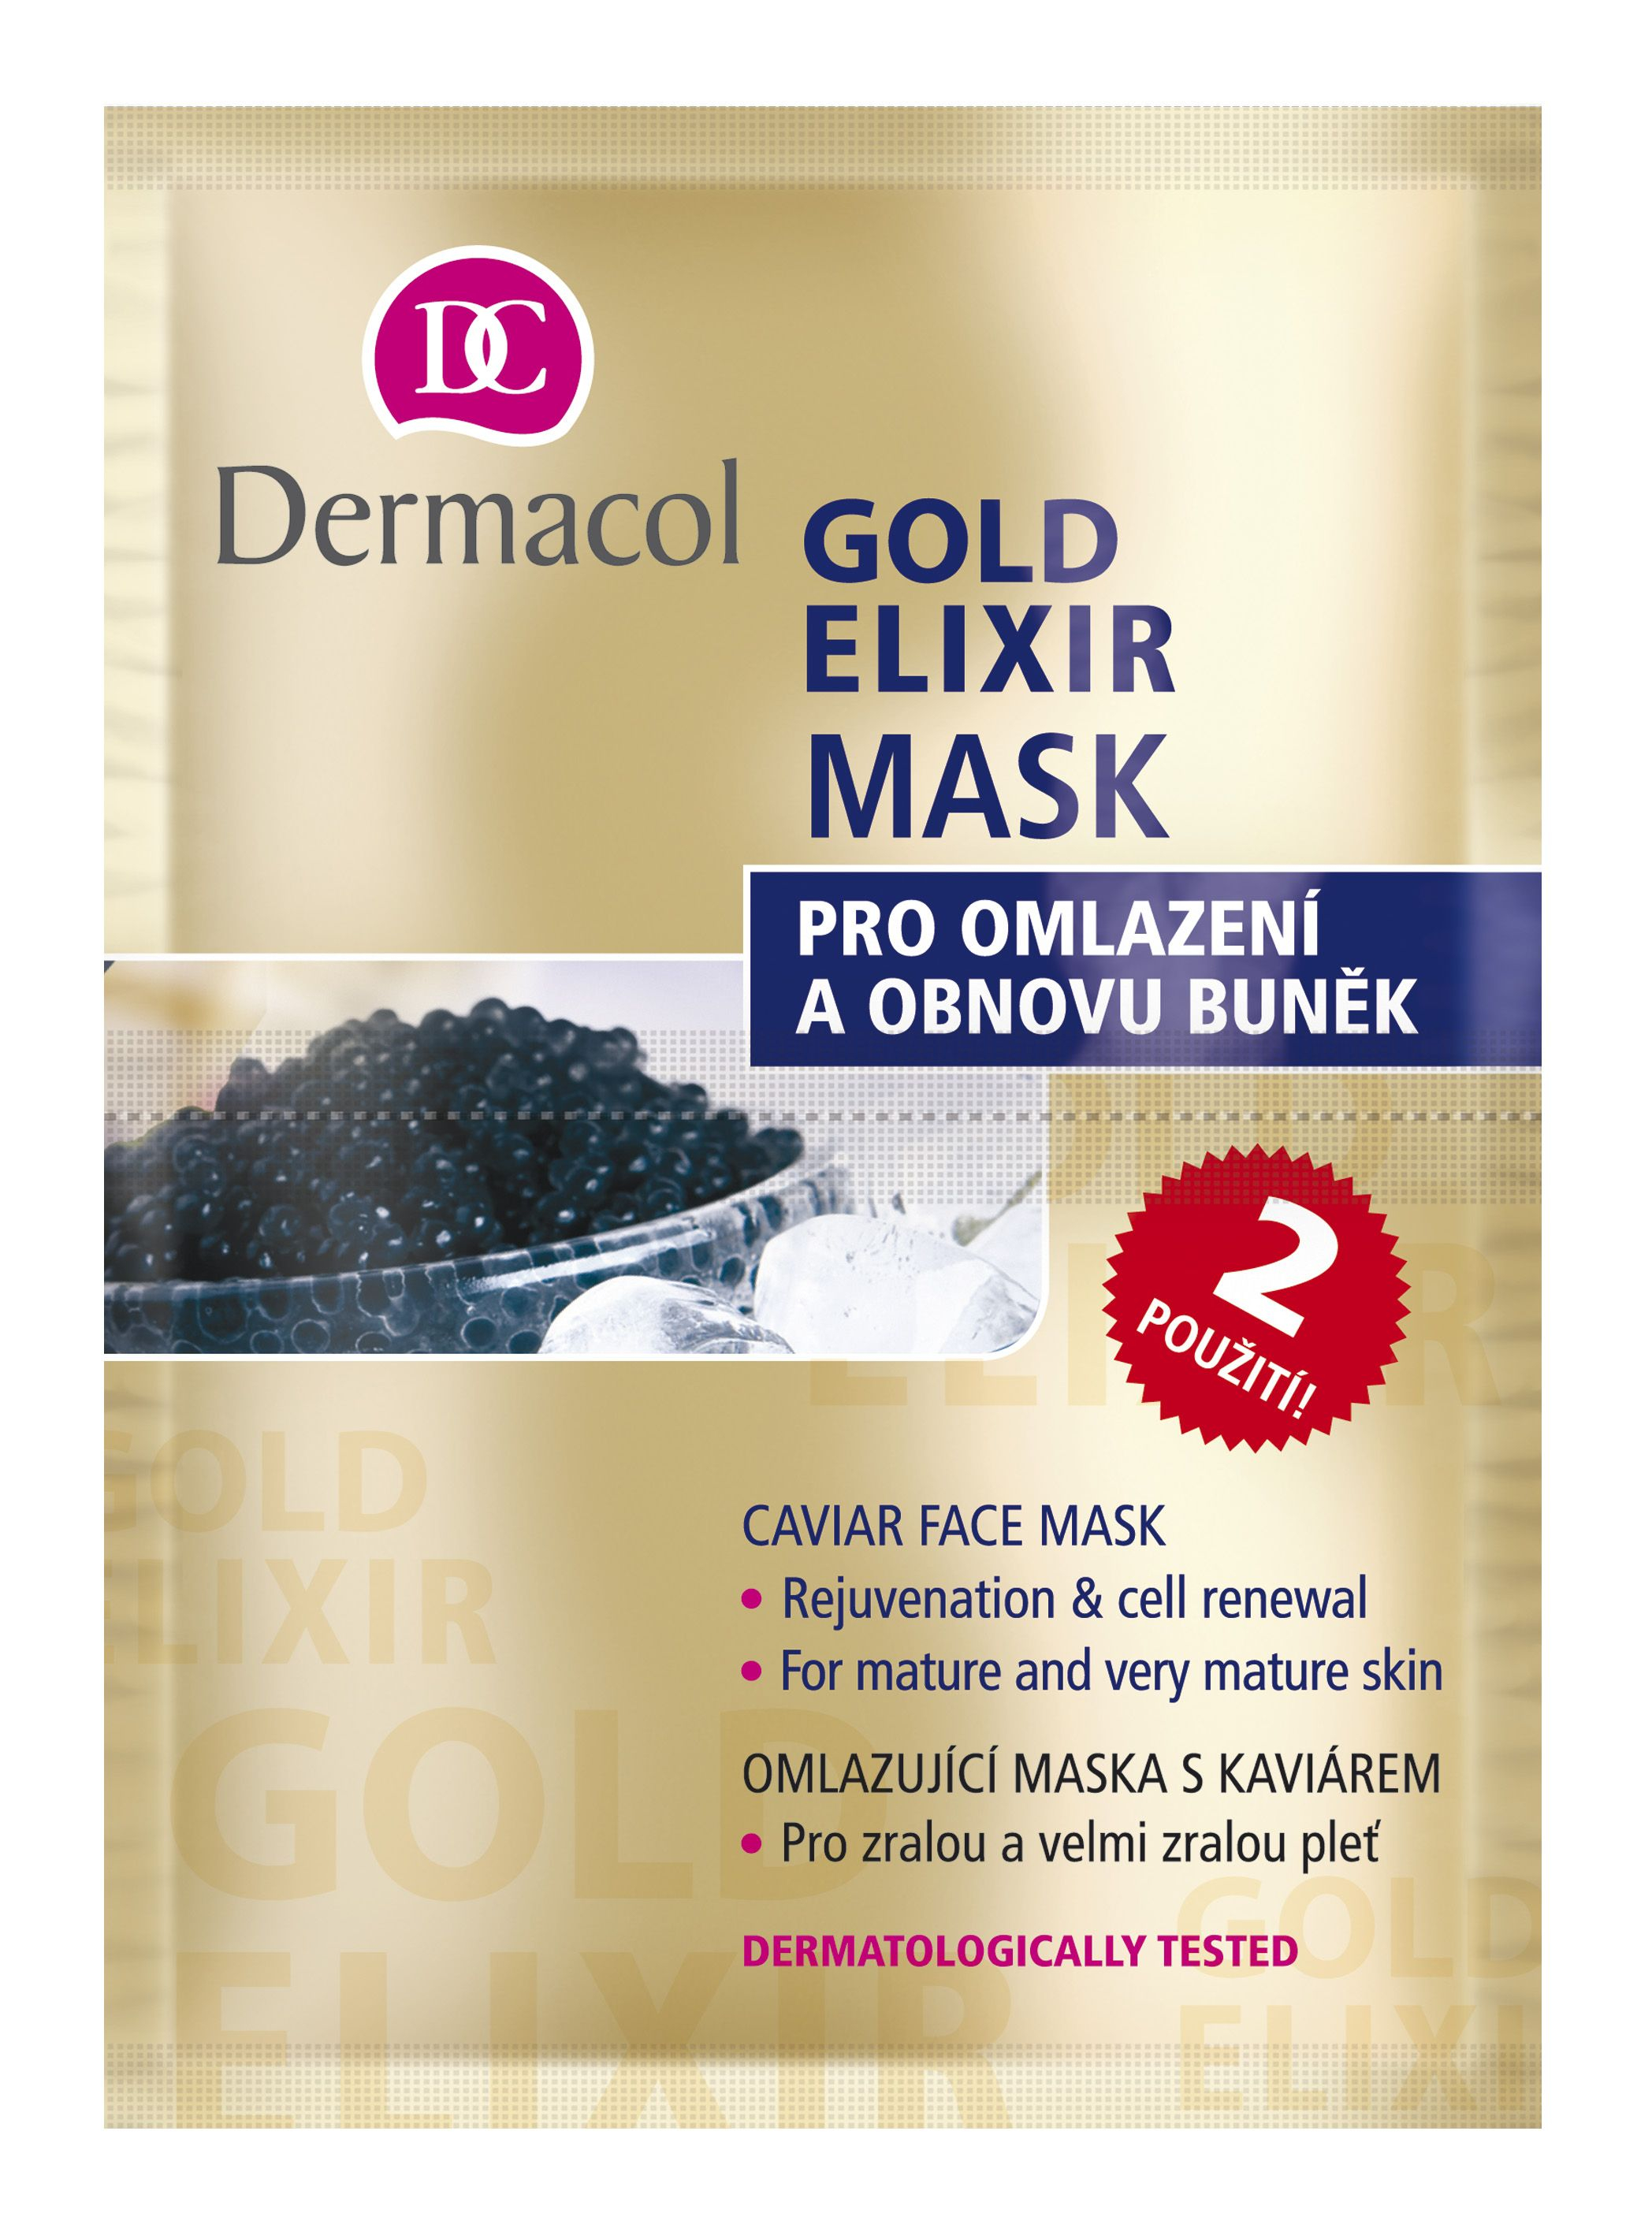 Dermacol Gold Elixir Omlazující kaviárová maska 2x8 g Dermacol